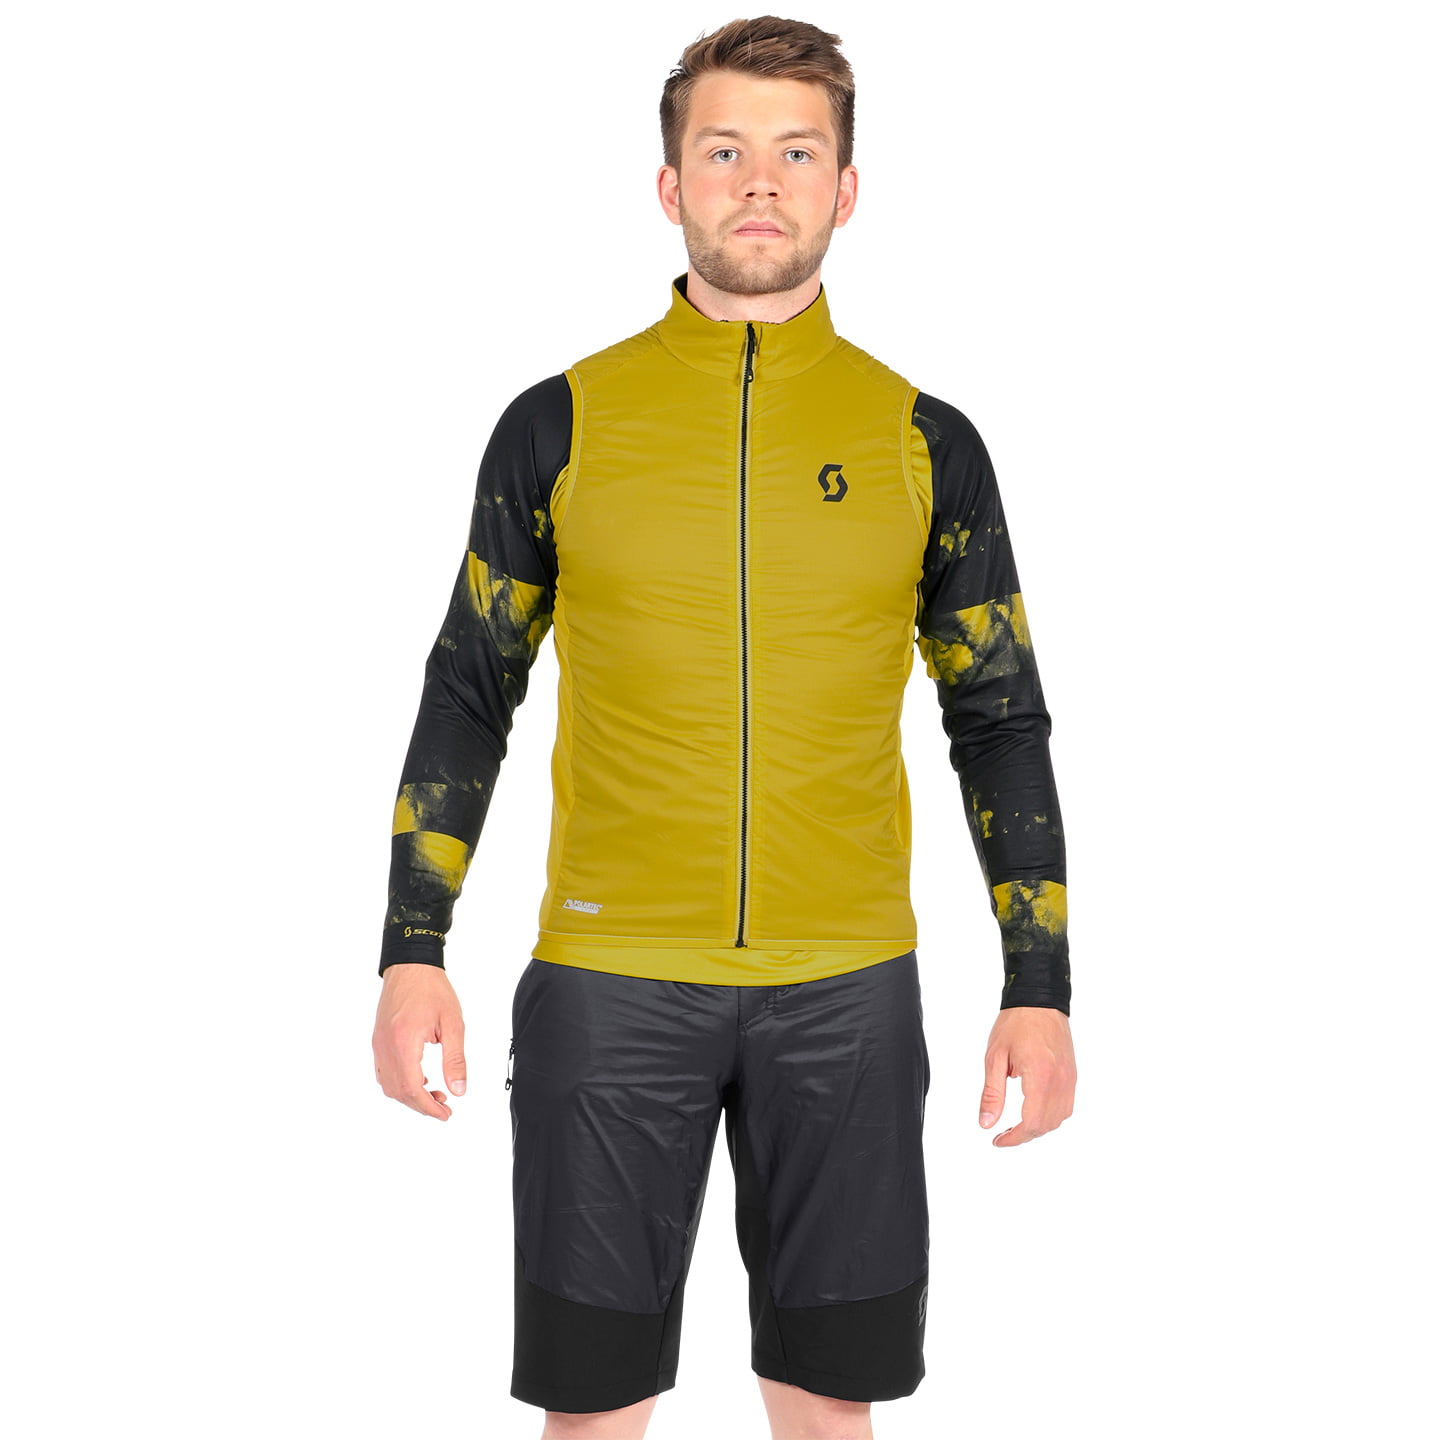 SCOTT Trail Storm Insuloft AL Maxi-Set (3 pieces), for men, Cycling clothing